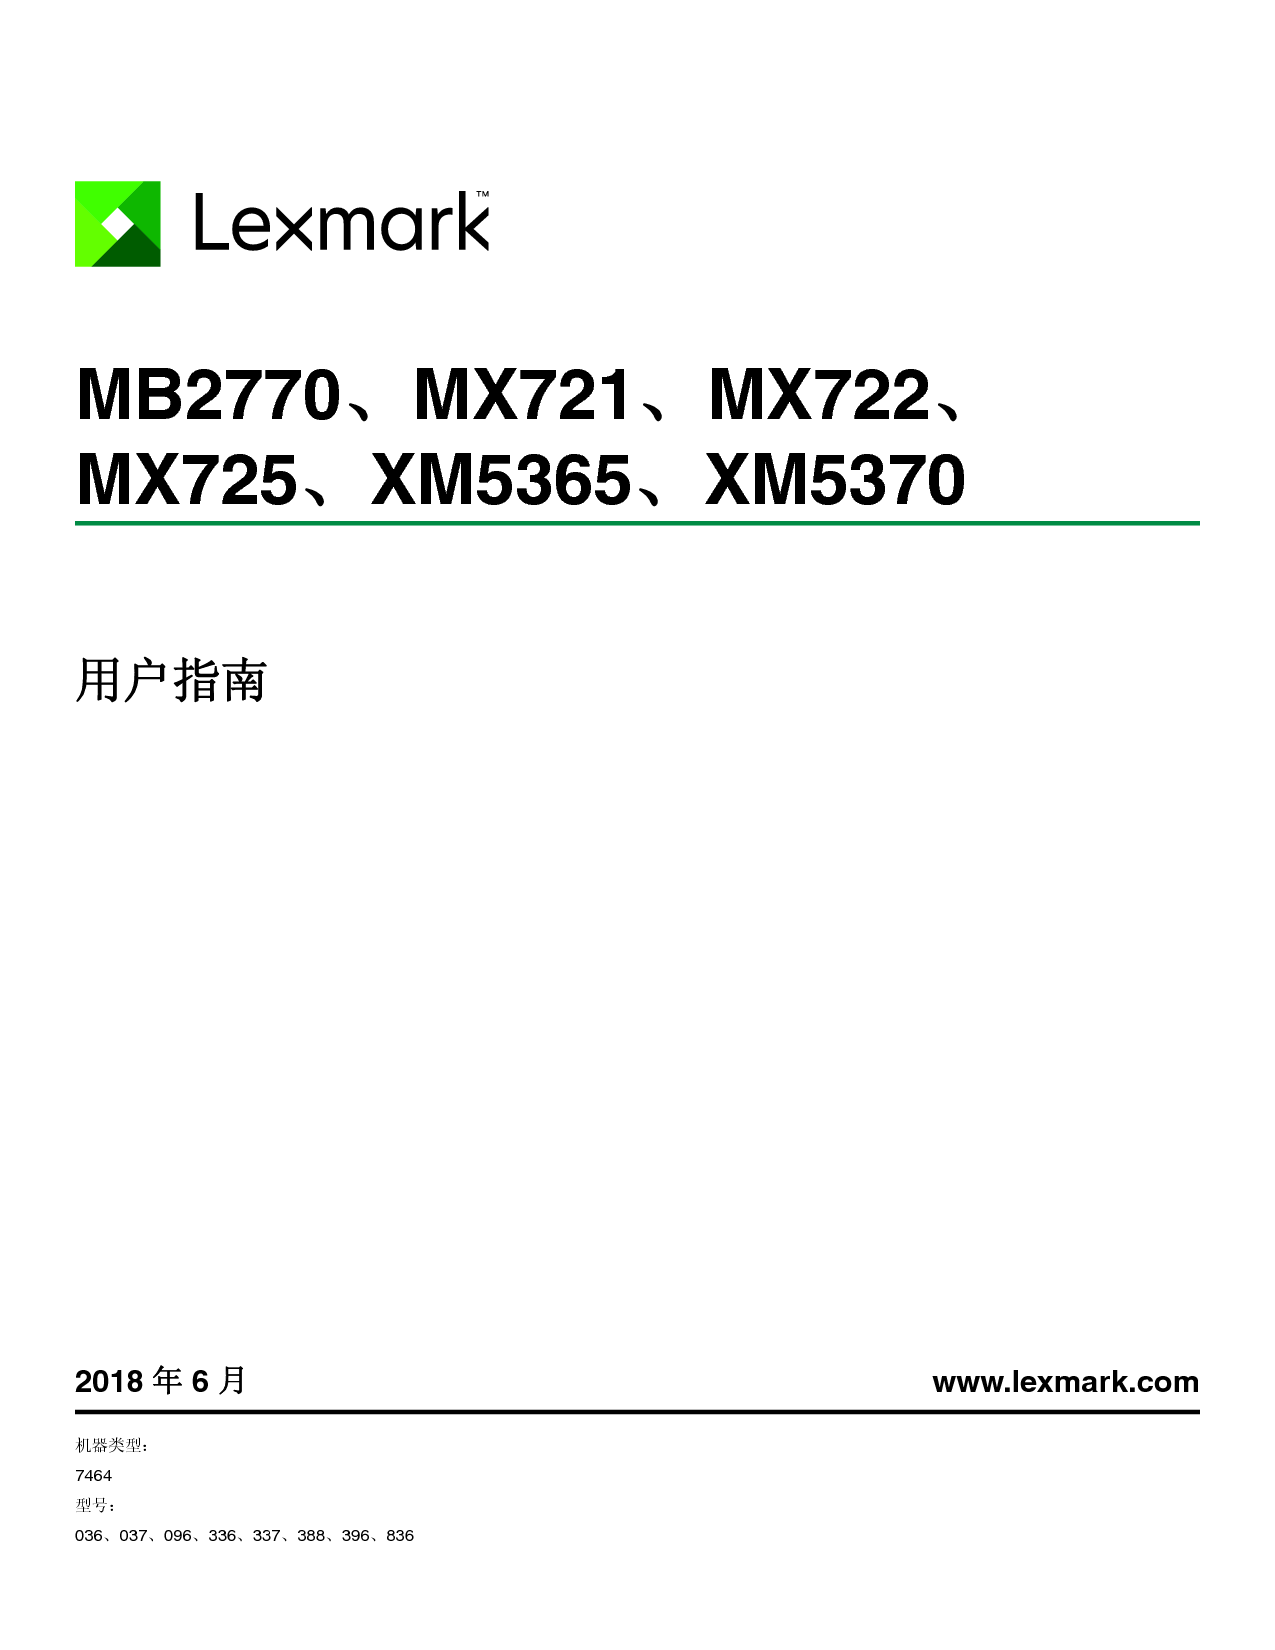 利盟 Lexmark MB2770, MX721, XM5365 用户指南 封面